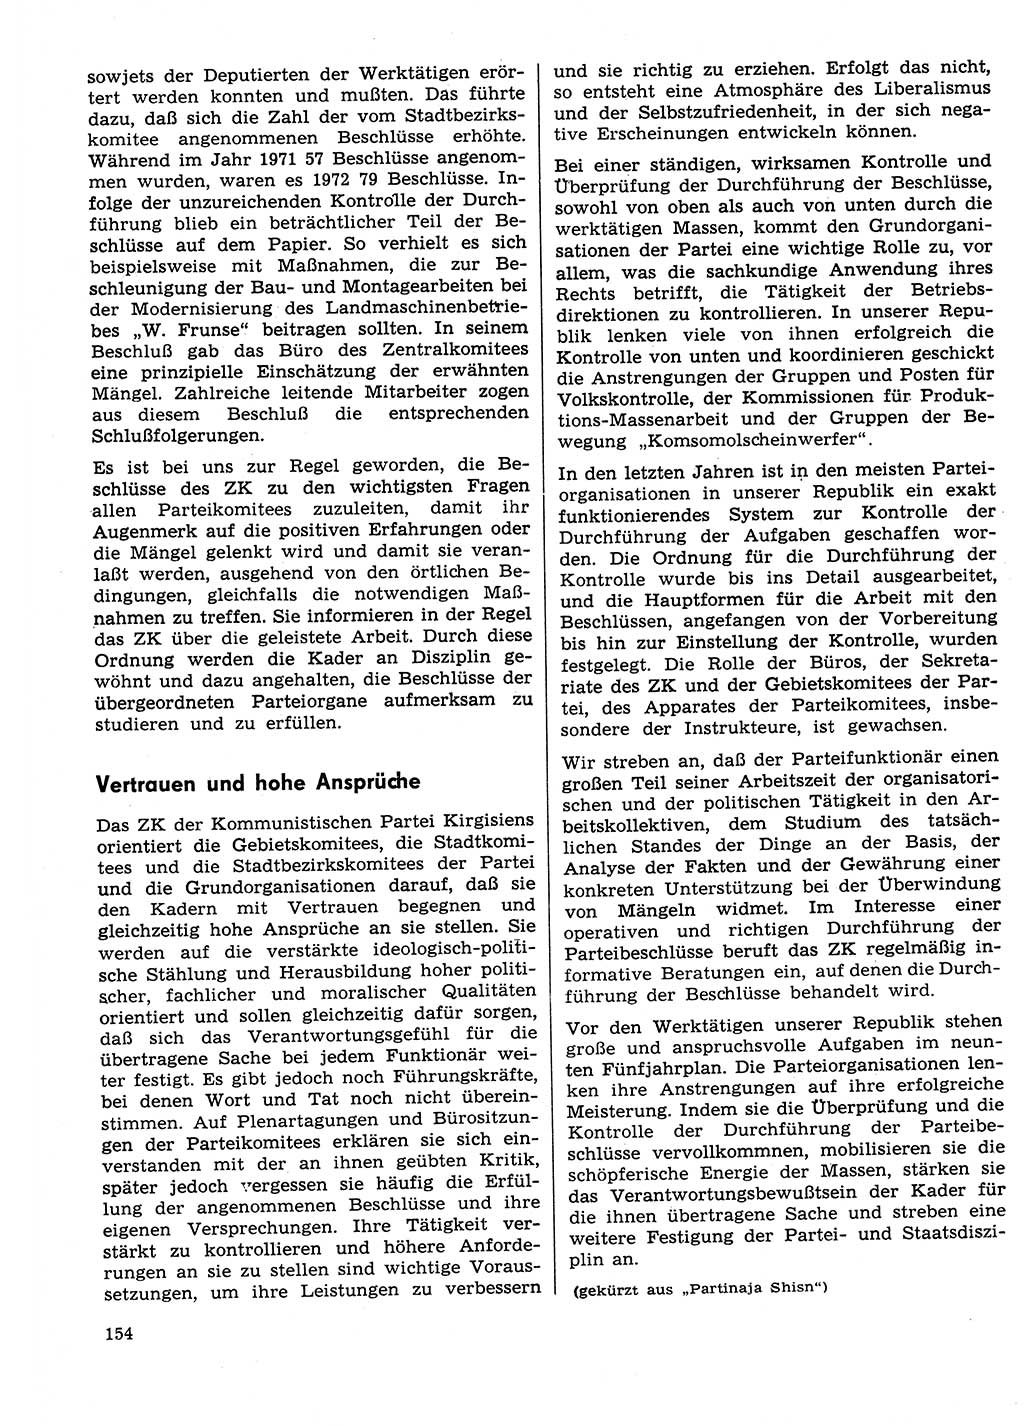 Neuer Weg (NW), Organ des Zentralkomitees (ZK) der SED (Sozialistische Einheitspartei Deutschlands) für Fragen des Parteilebens, 29. Jahrgang [Deutsche Demokratische Republik (DDR)] 1974, Seite 154 (NW ZK SED DDR 1974, S. 154)